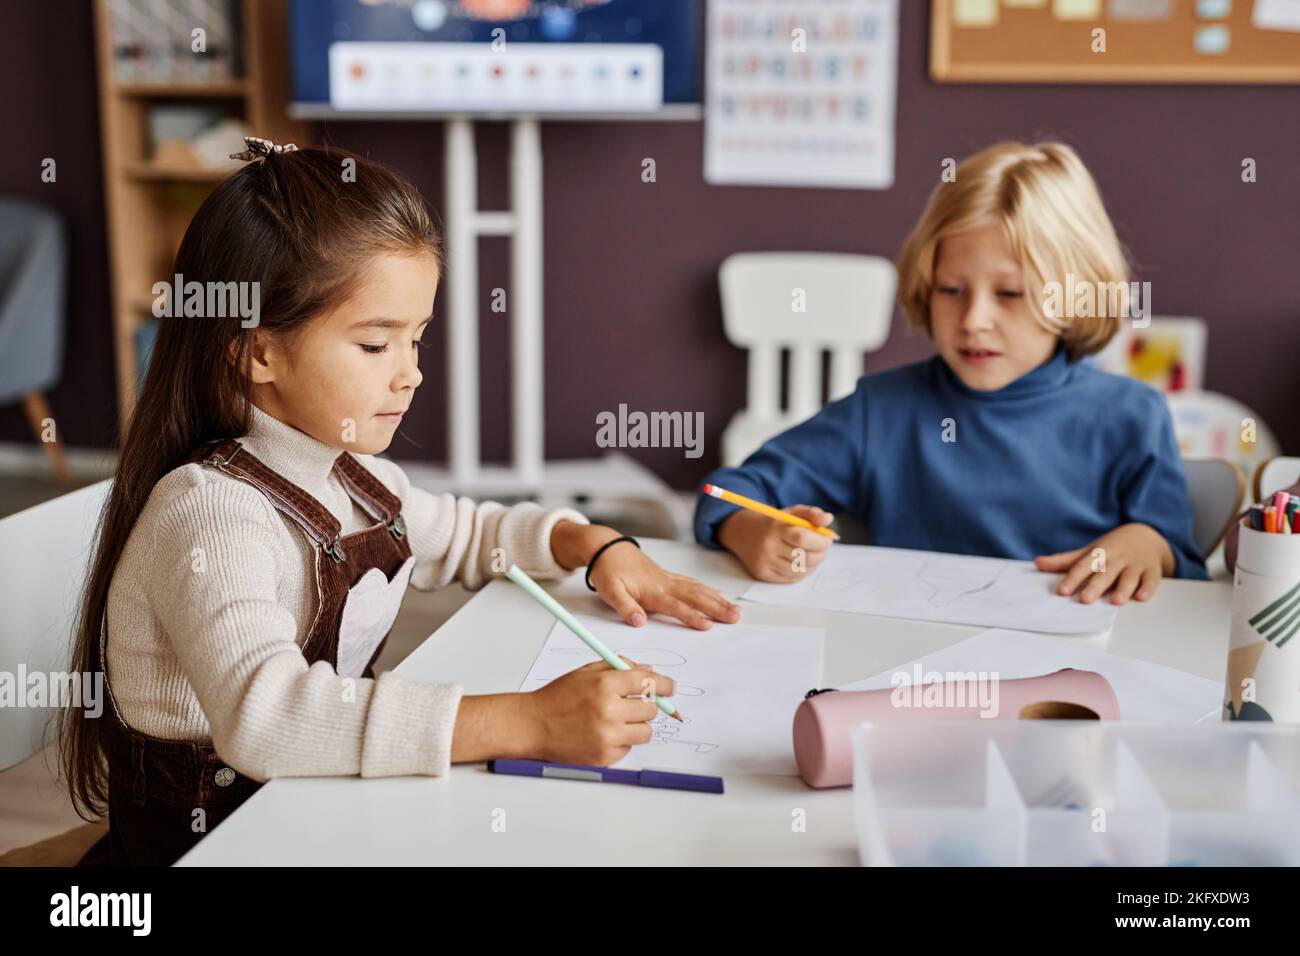 Deux écoliers diligents qui dessinant sur des papiers avec des crayons tout en étant assis à table dans la salle de classe de la maternelle ou maternelle moderne Banque D'Images